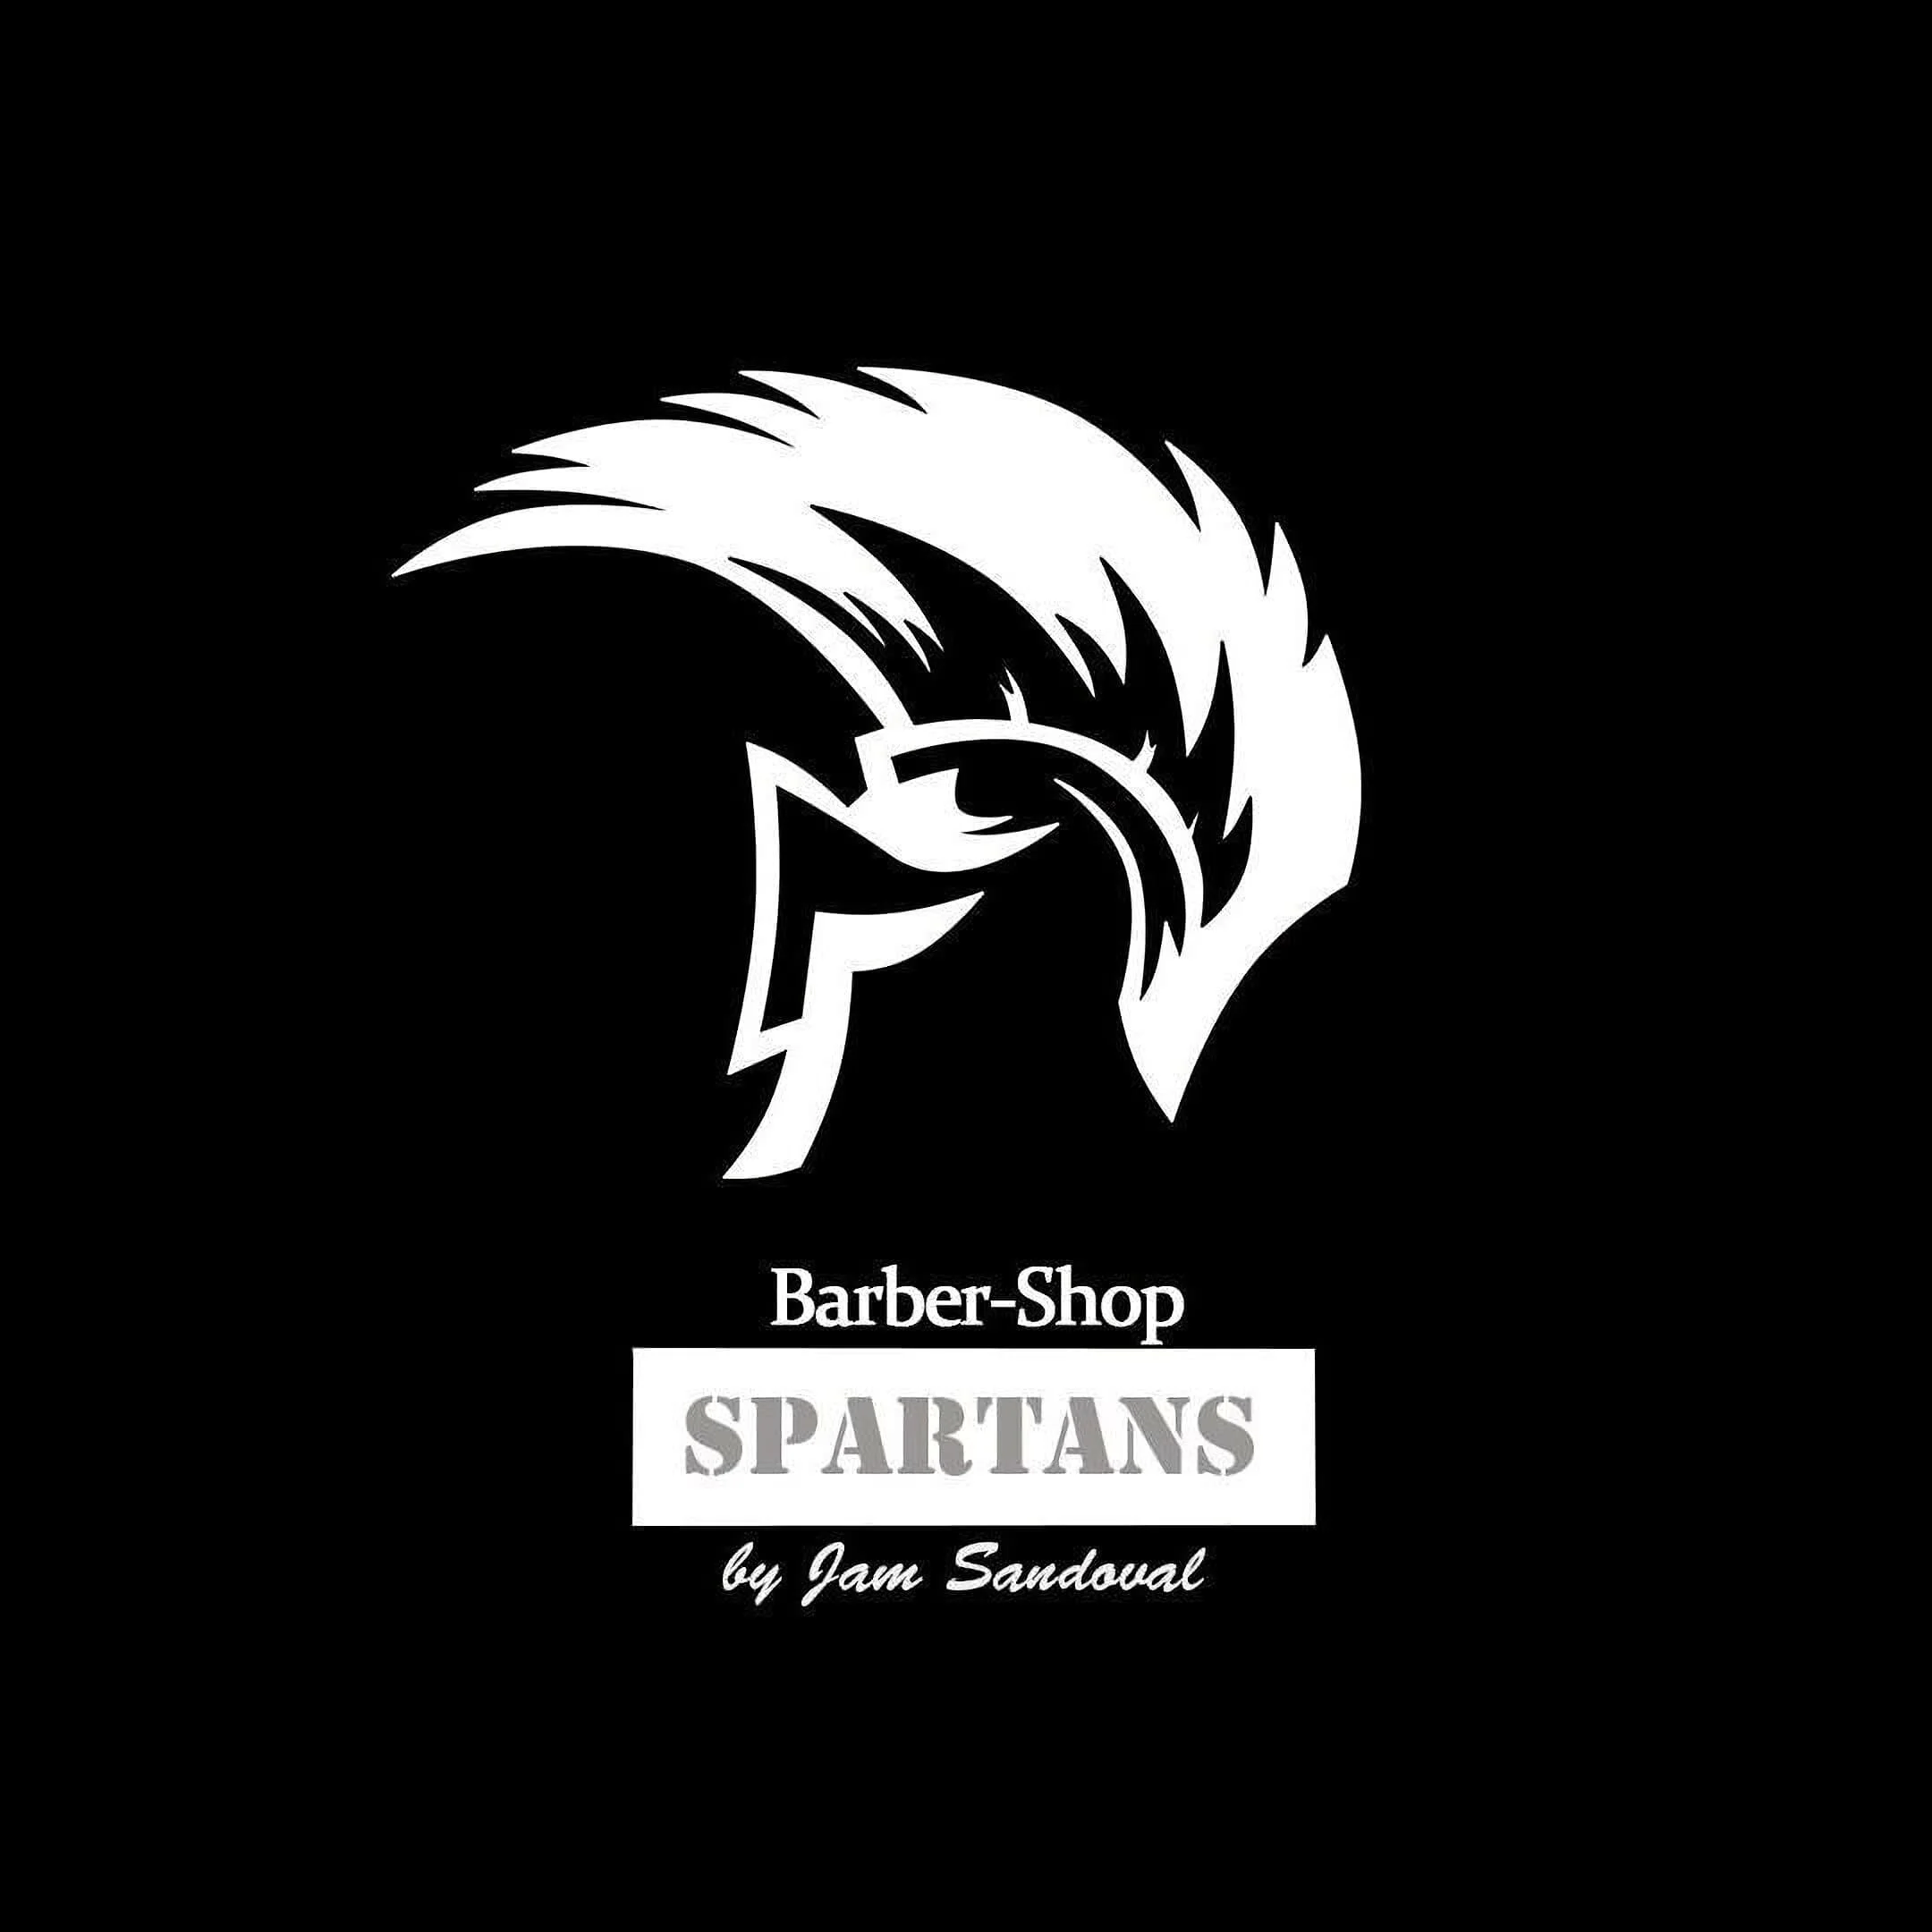 Barbería-the-spartan-barbershop-11546